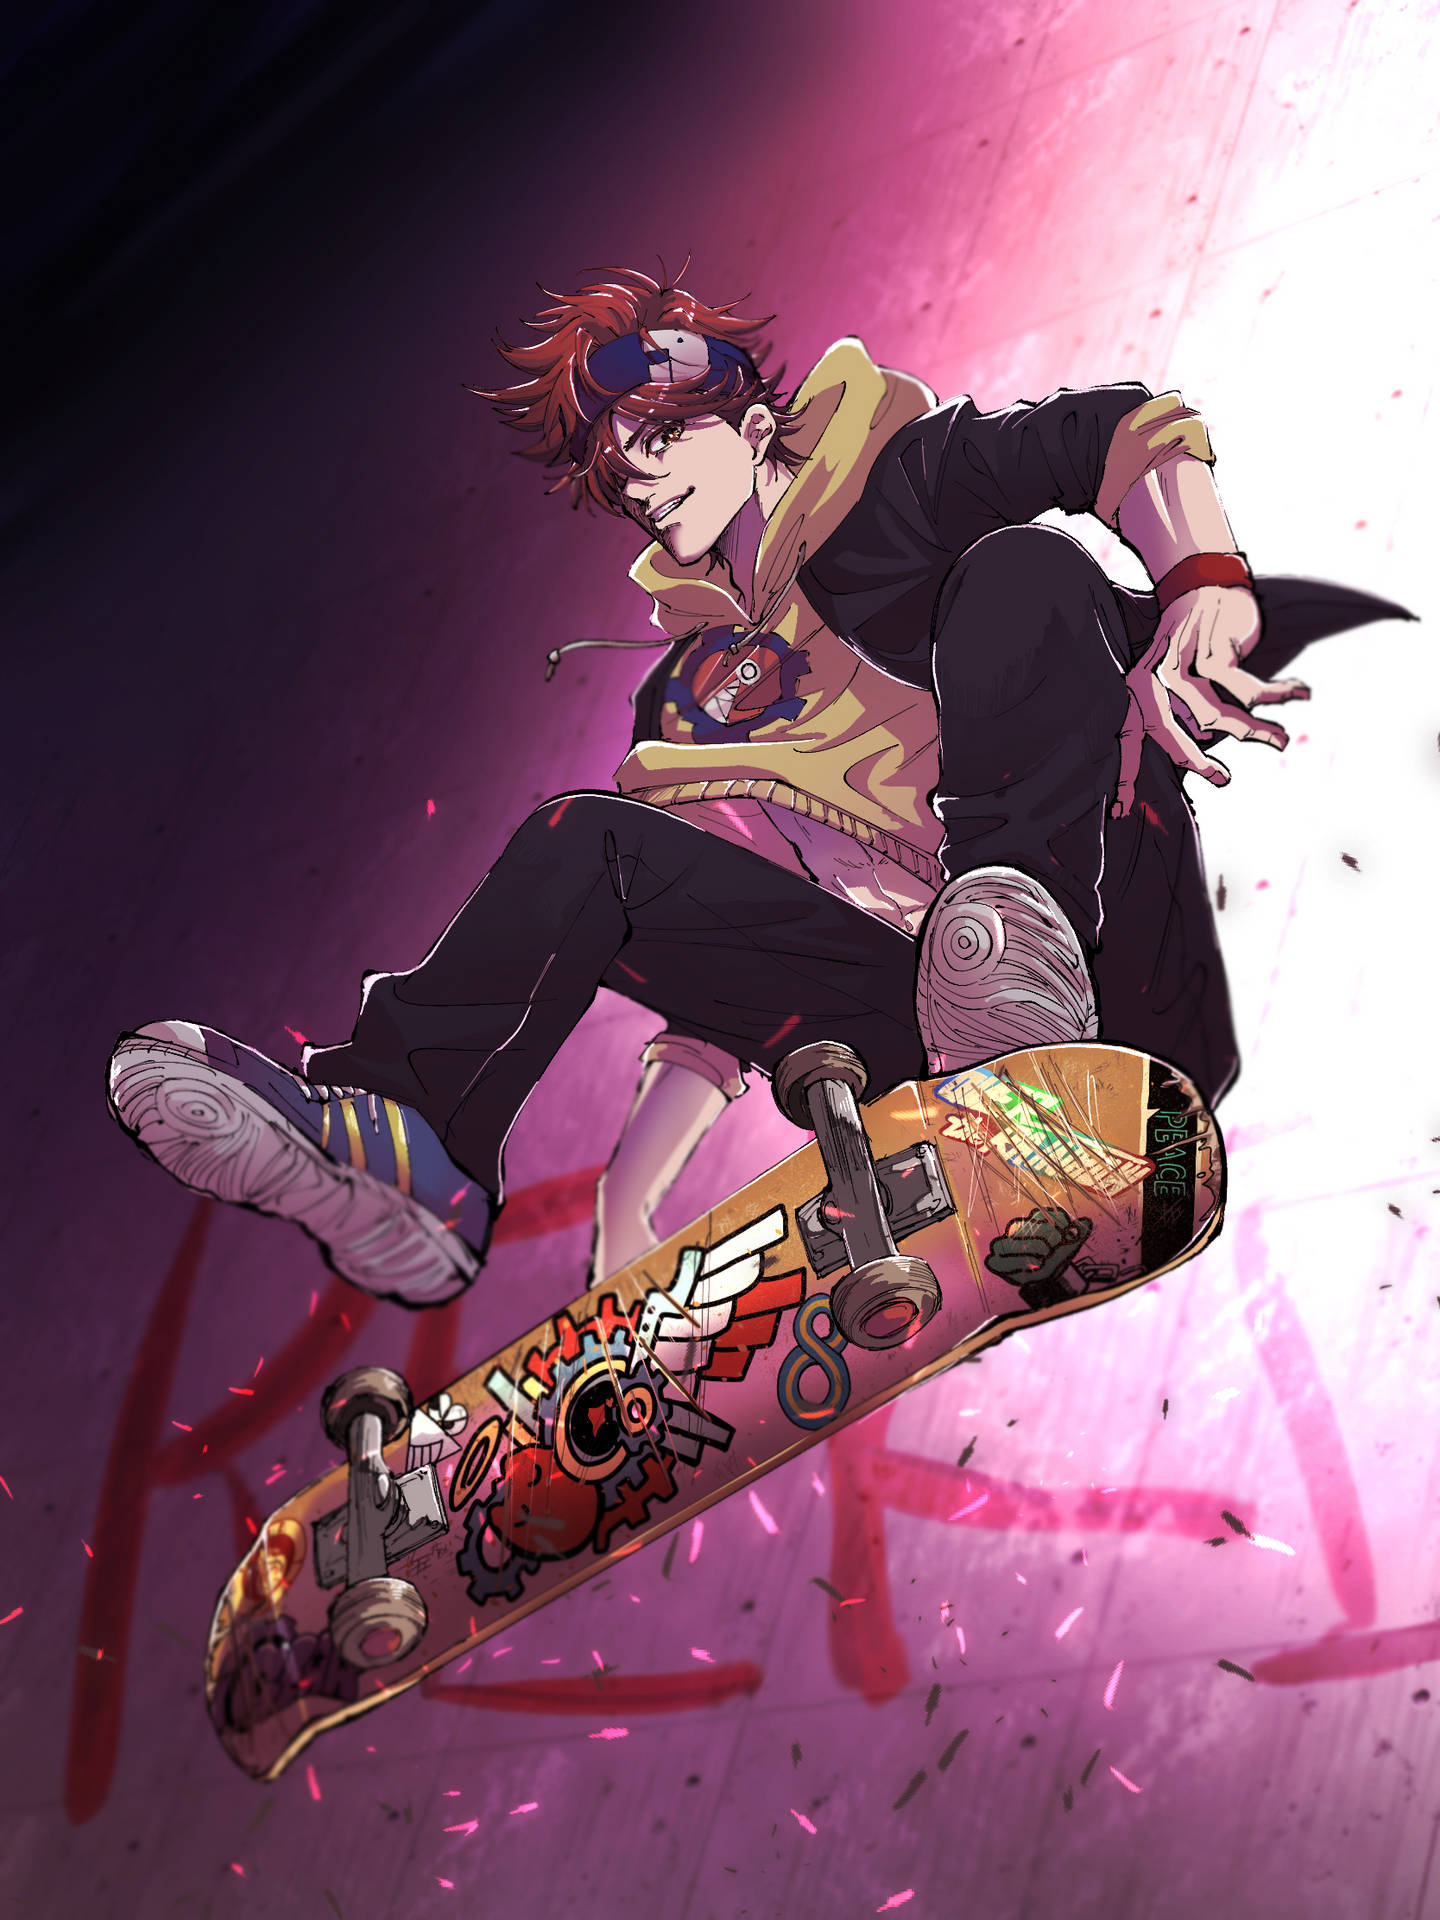 Aesthetic Anime Skater Boy Background